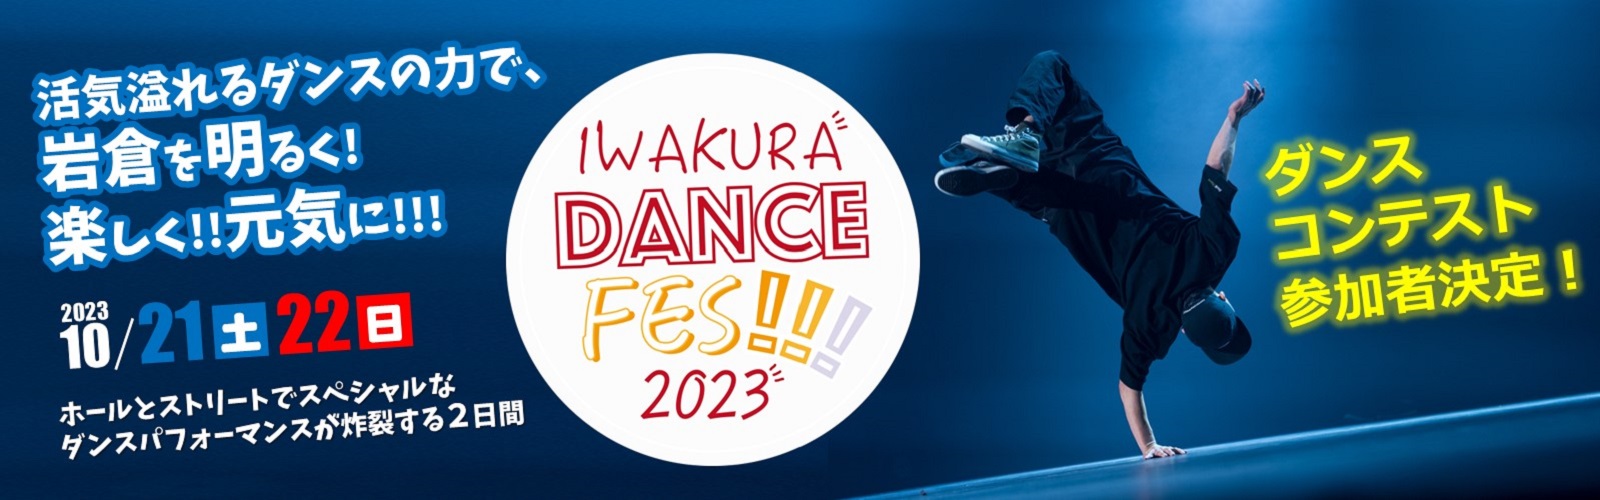 IWAKURA DANCE FES 2023